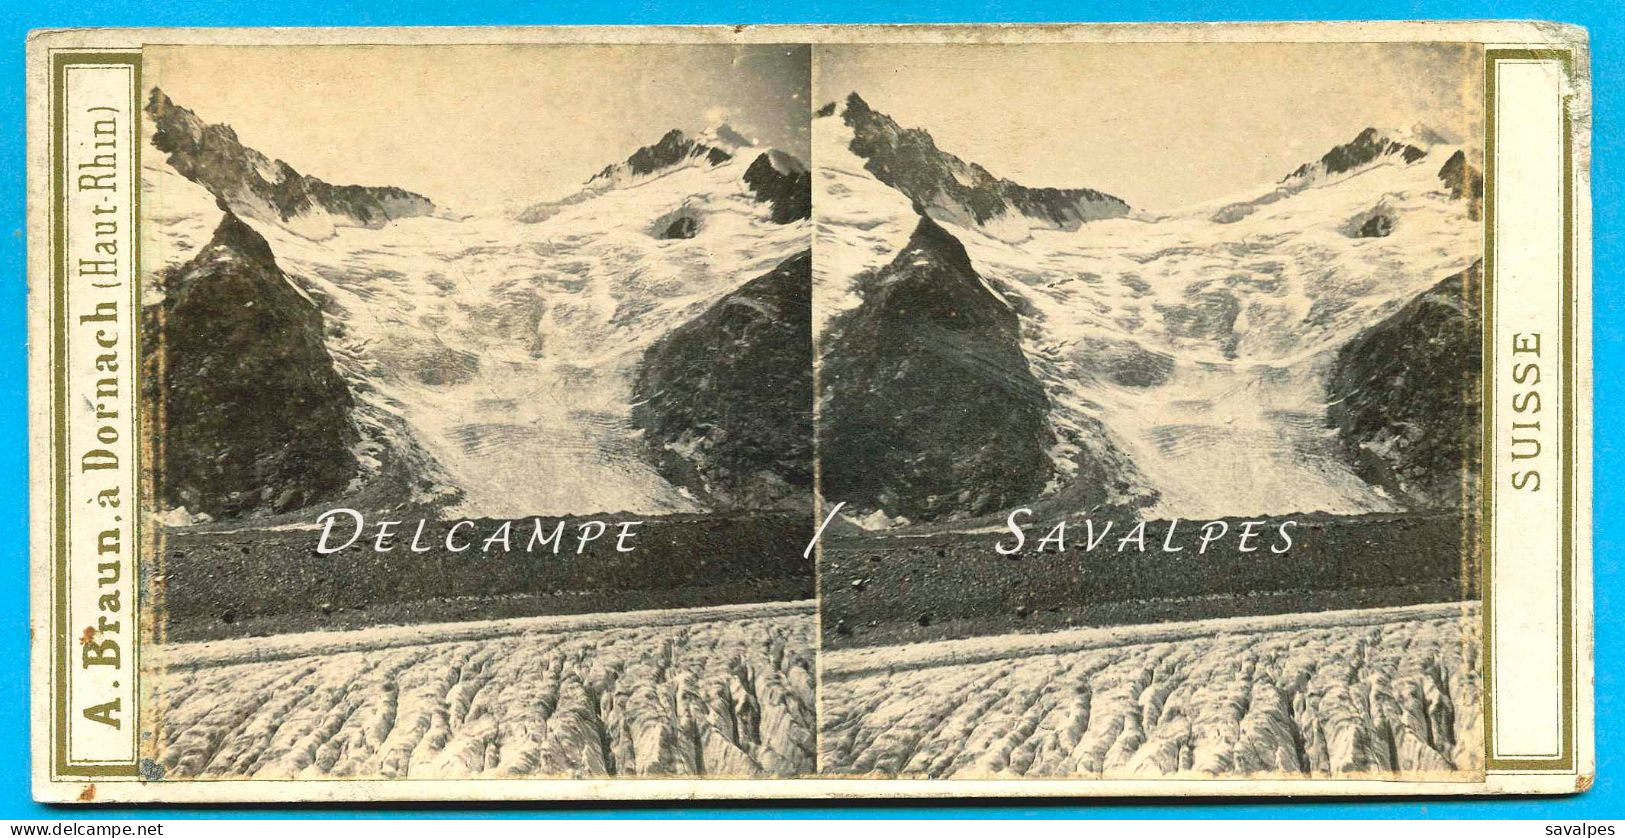 Suisse Grindelwald * Glacier De Thierberg Et Finsteraar - Photo Stéréoscopique Braun Vers 1865 - Stereoscopio